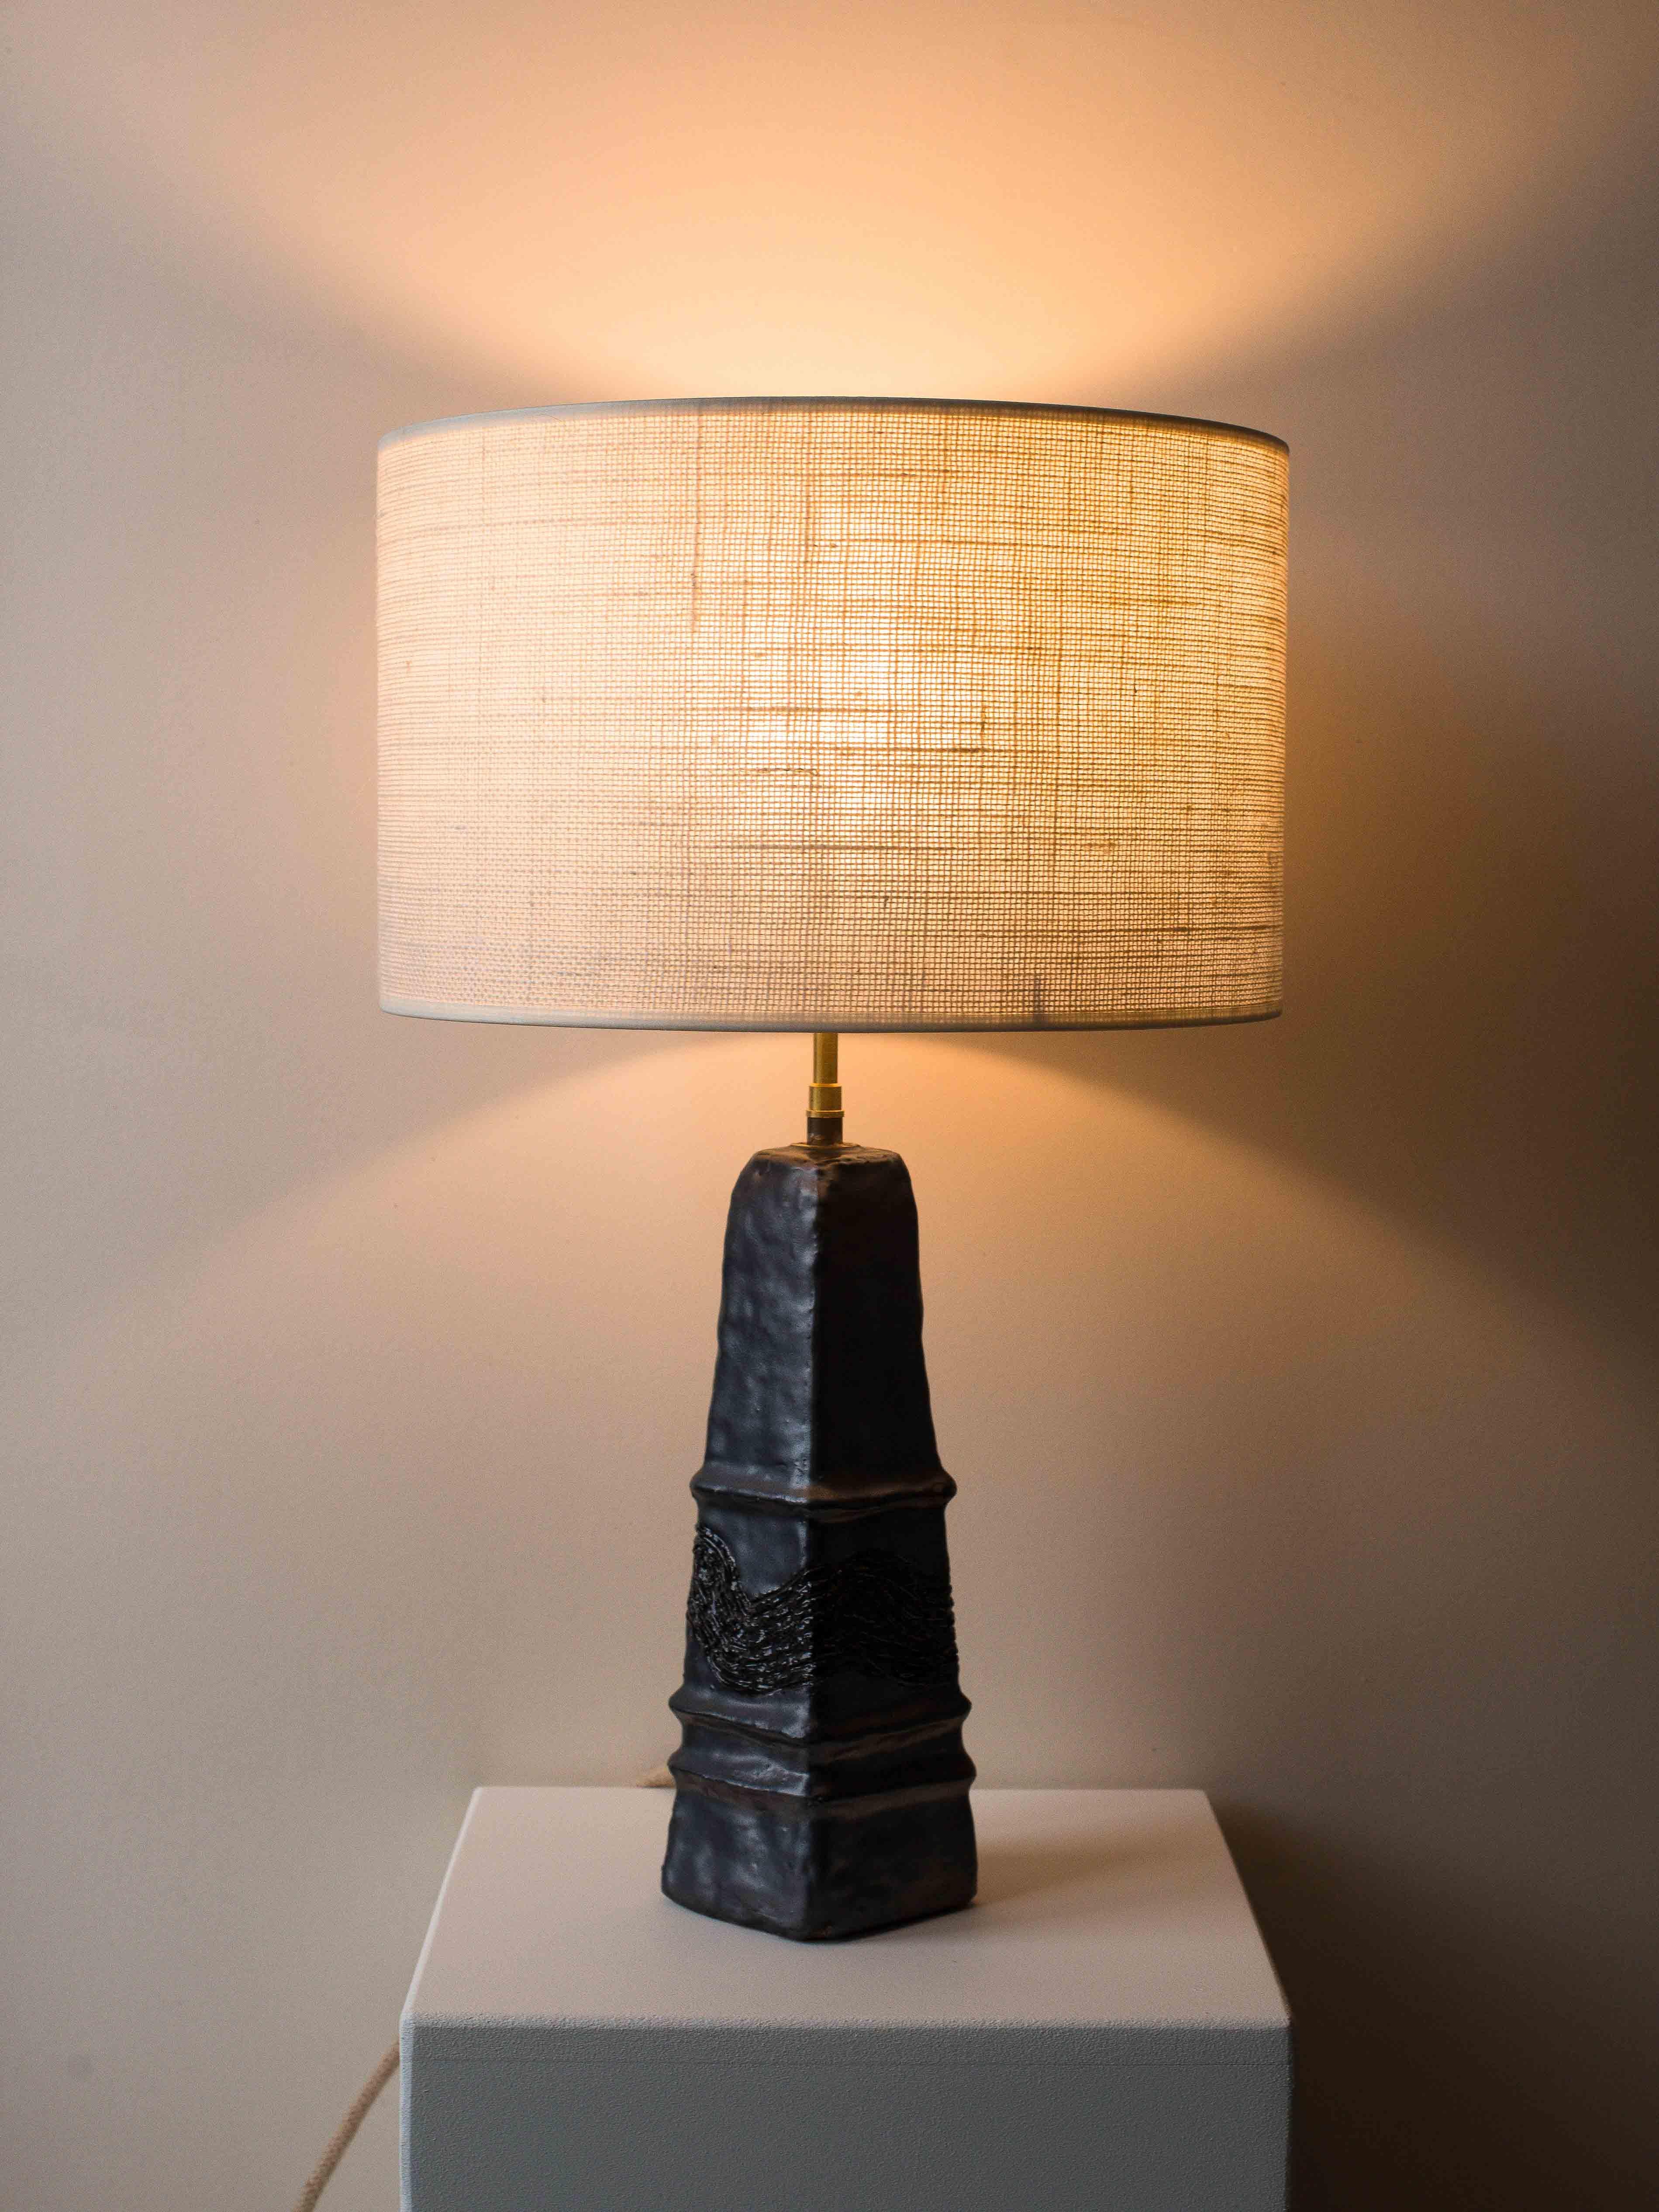 Tischlampe aus schwarzem Ton aus der Mitte des Jahrhunderts, um 1970.

Diese Tonlampe ist ein Einzelstück aus den 1970er Jahren, das von einem französischen Kunsthandwerker handgefertigt wurde. Sein pyramidenförmiges Design und die grafischen Muster